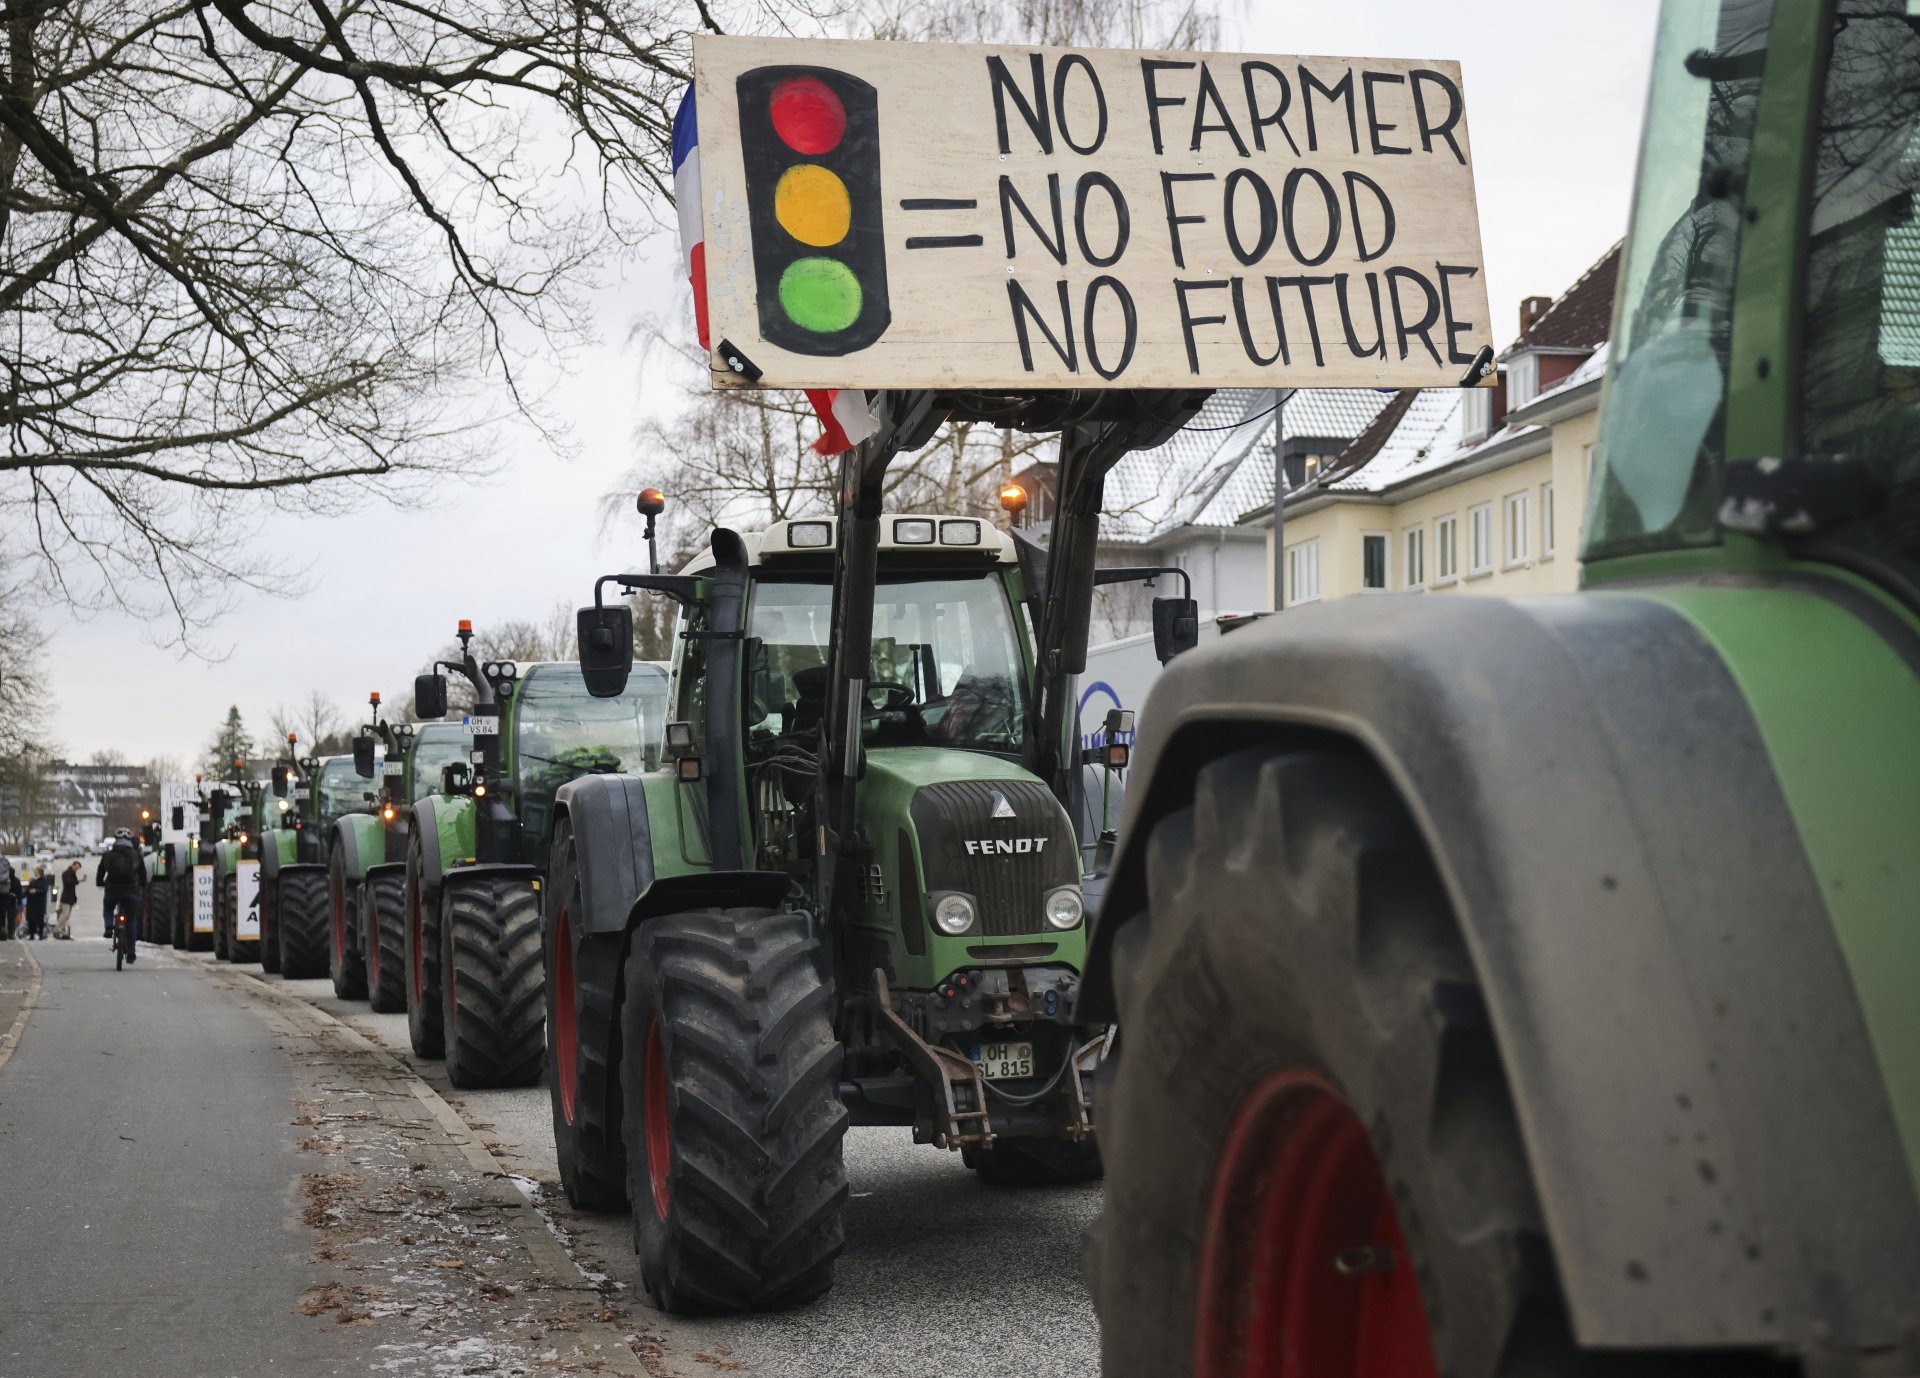 Без фермери няма храна, няма и бъдеще: окупация на градския парламент в Кил